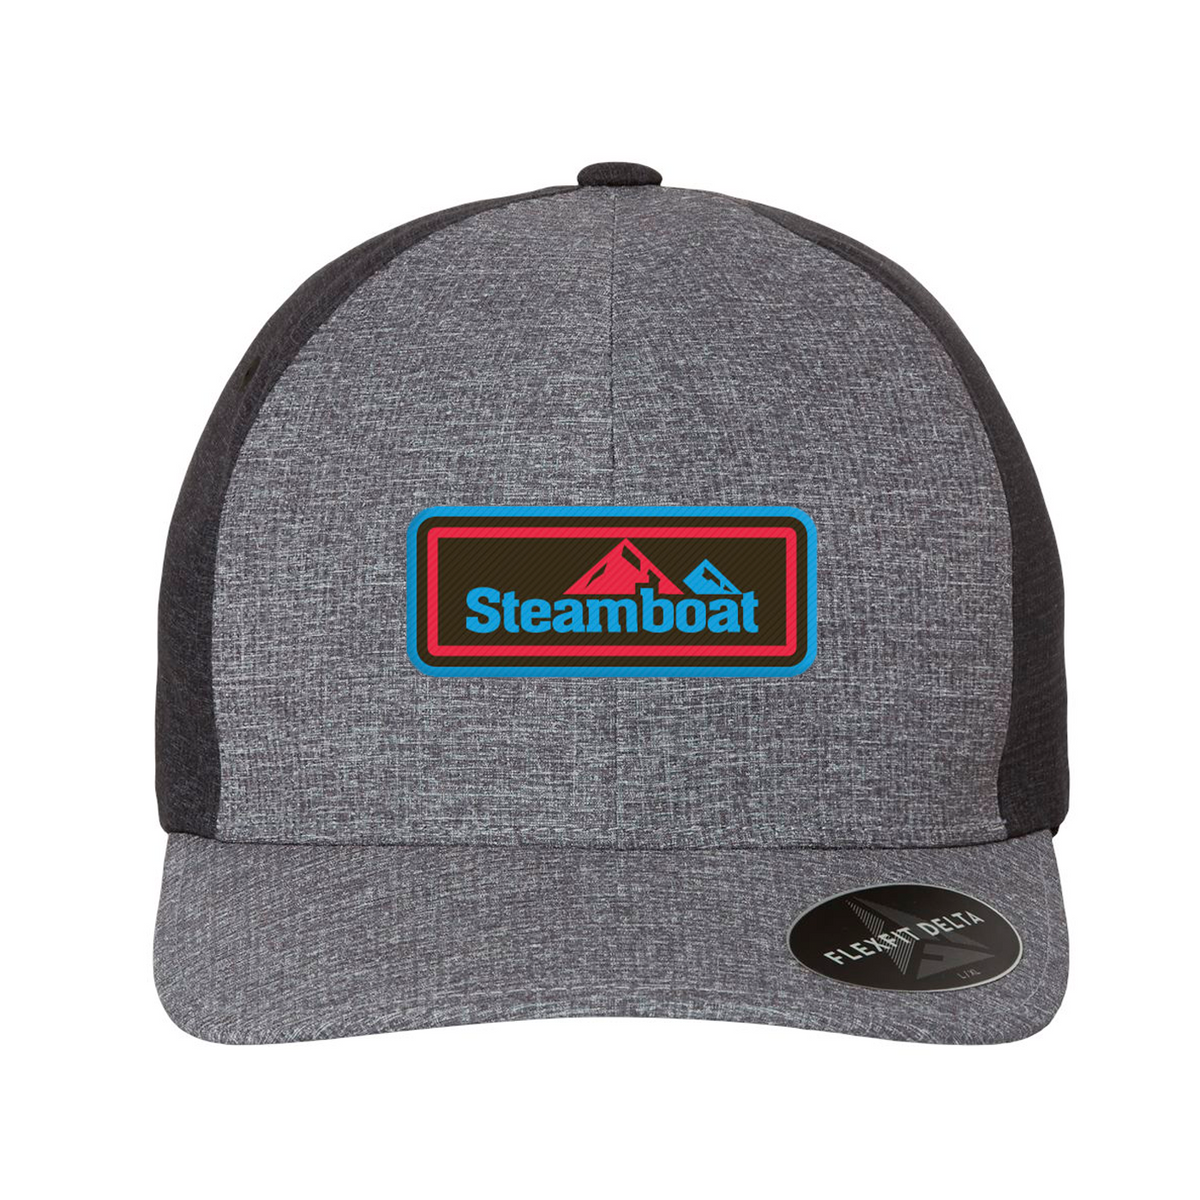 Steamboat FlexFit – Steamboat Shop Hat